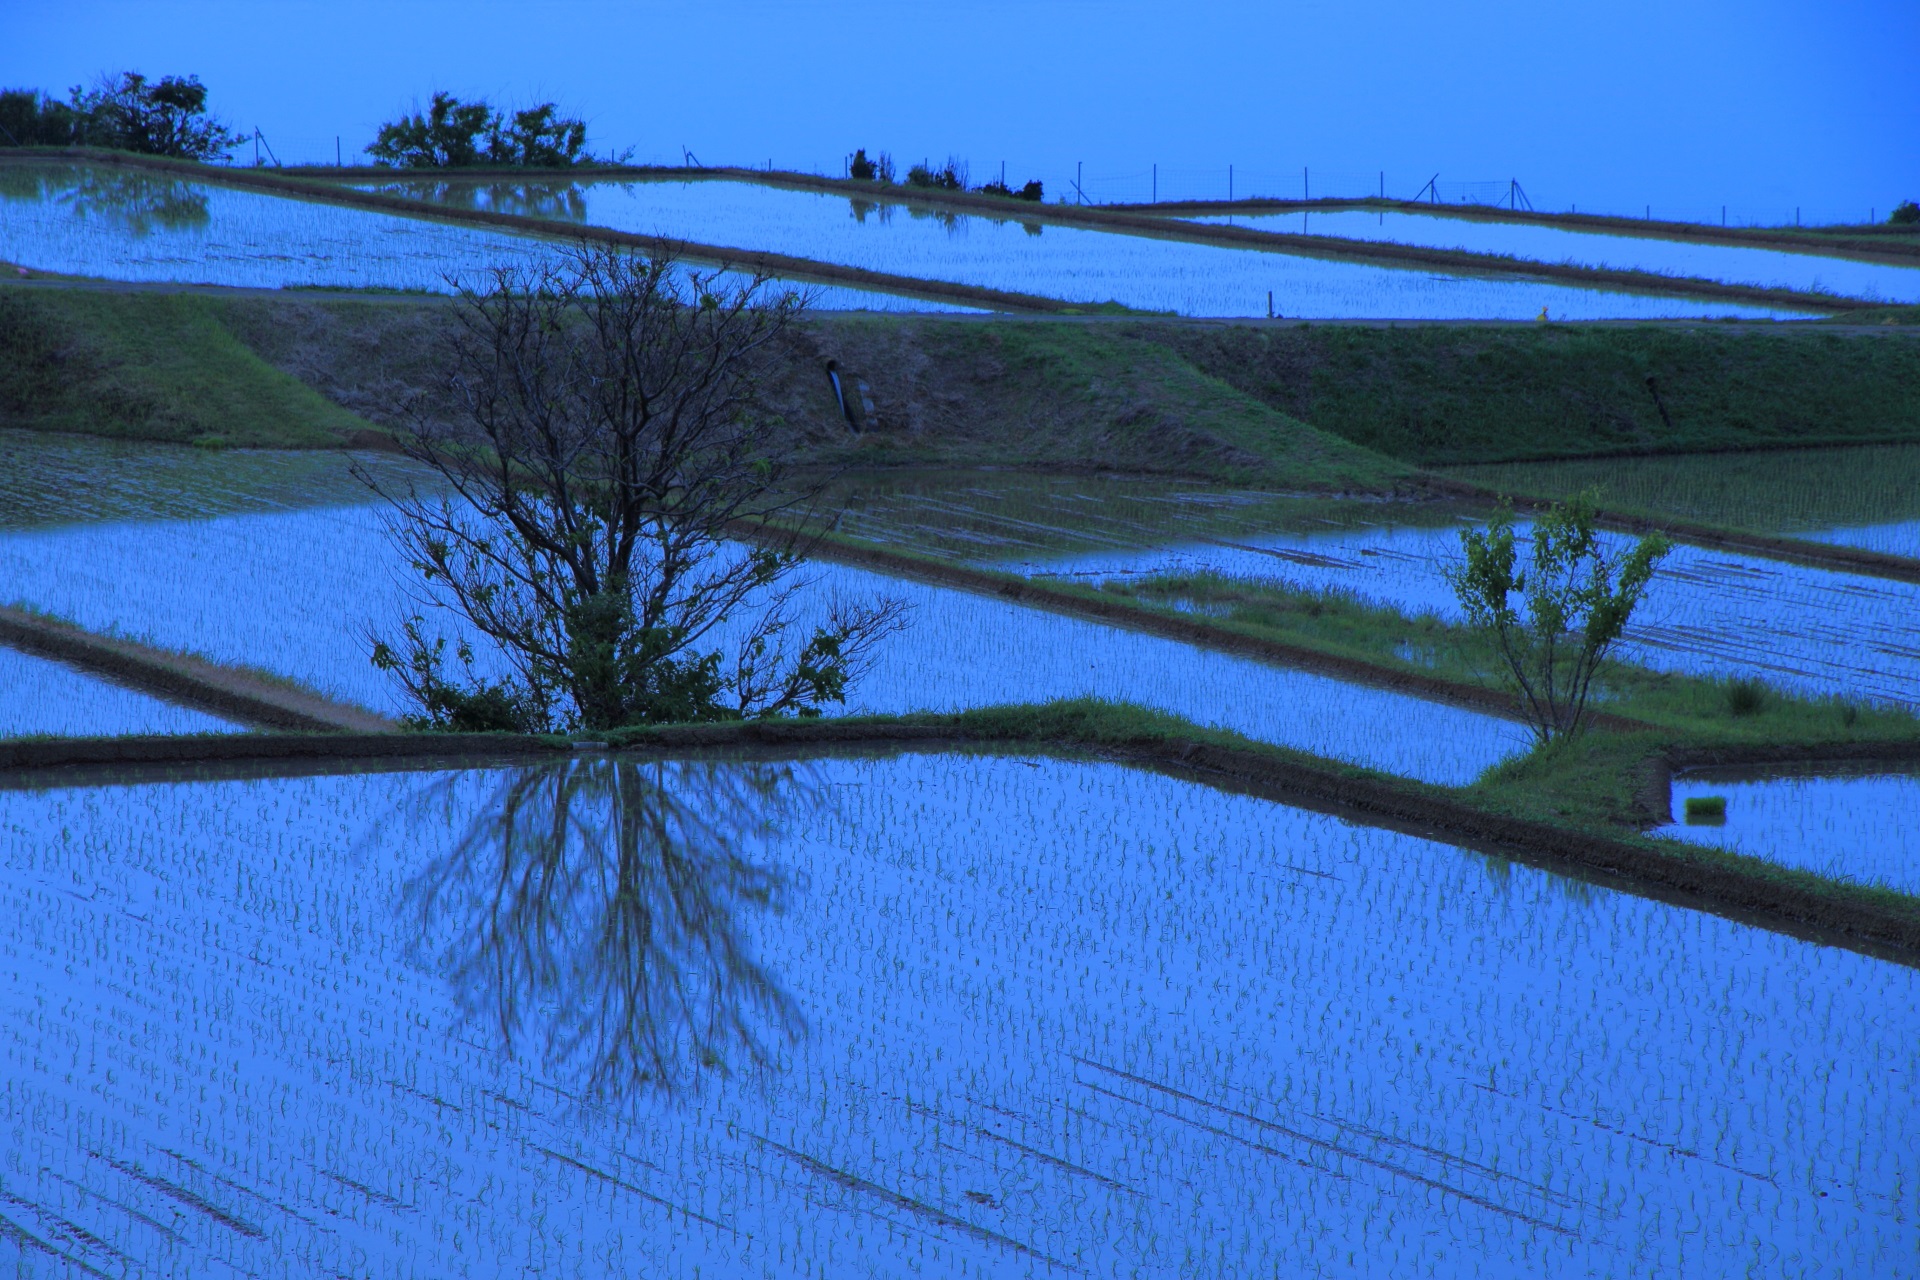 ほのかに光るような田んぼの水面と水鏡